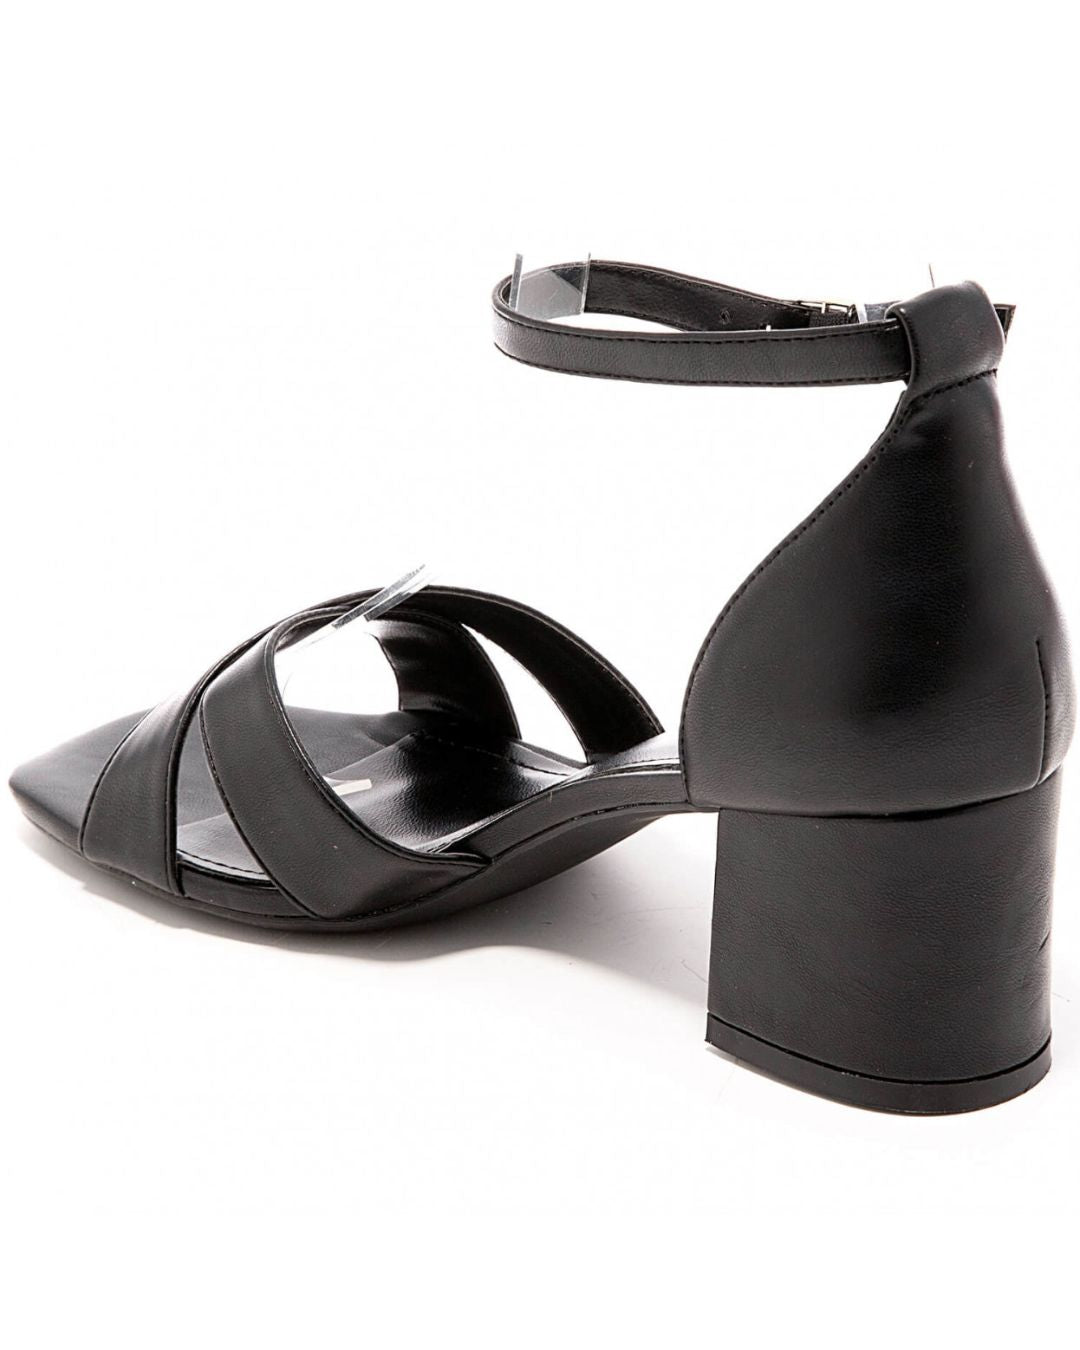 Sandale femme talon carré noir - Flora - Casualmode.fr